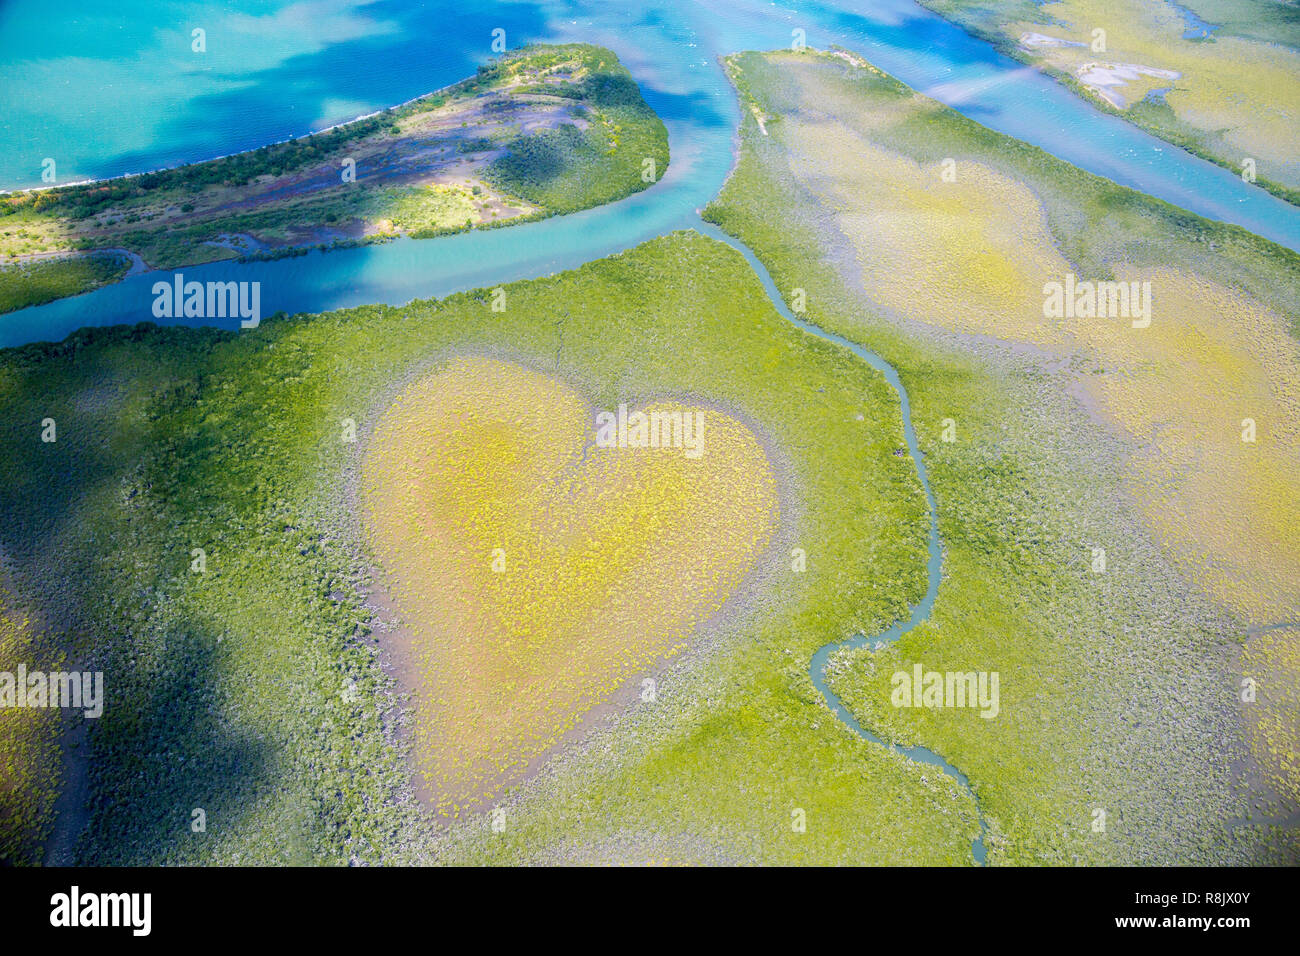 Cuore di Voh, vista aerea, formazione di mangrovie vegetazione assomiglia ad un cuore visto da sopra, Nuova Caledonia, Micronesia, Oceano Pacifico del Sud. Cuore di terra. La giornata della terra. Amare la vita, salvare l'ambiente. Foto Stock